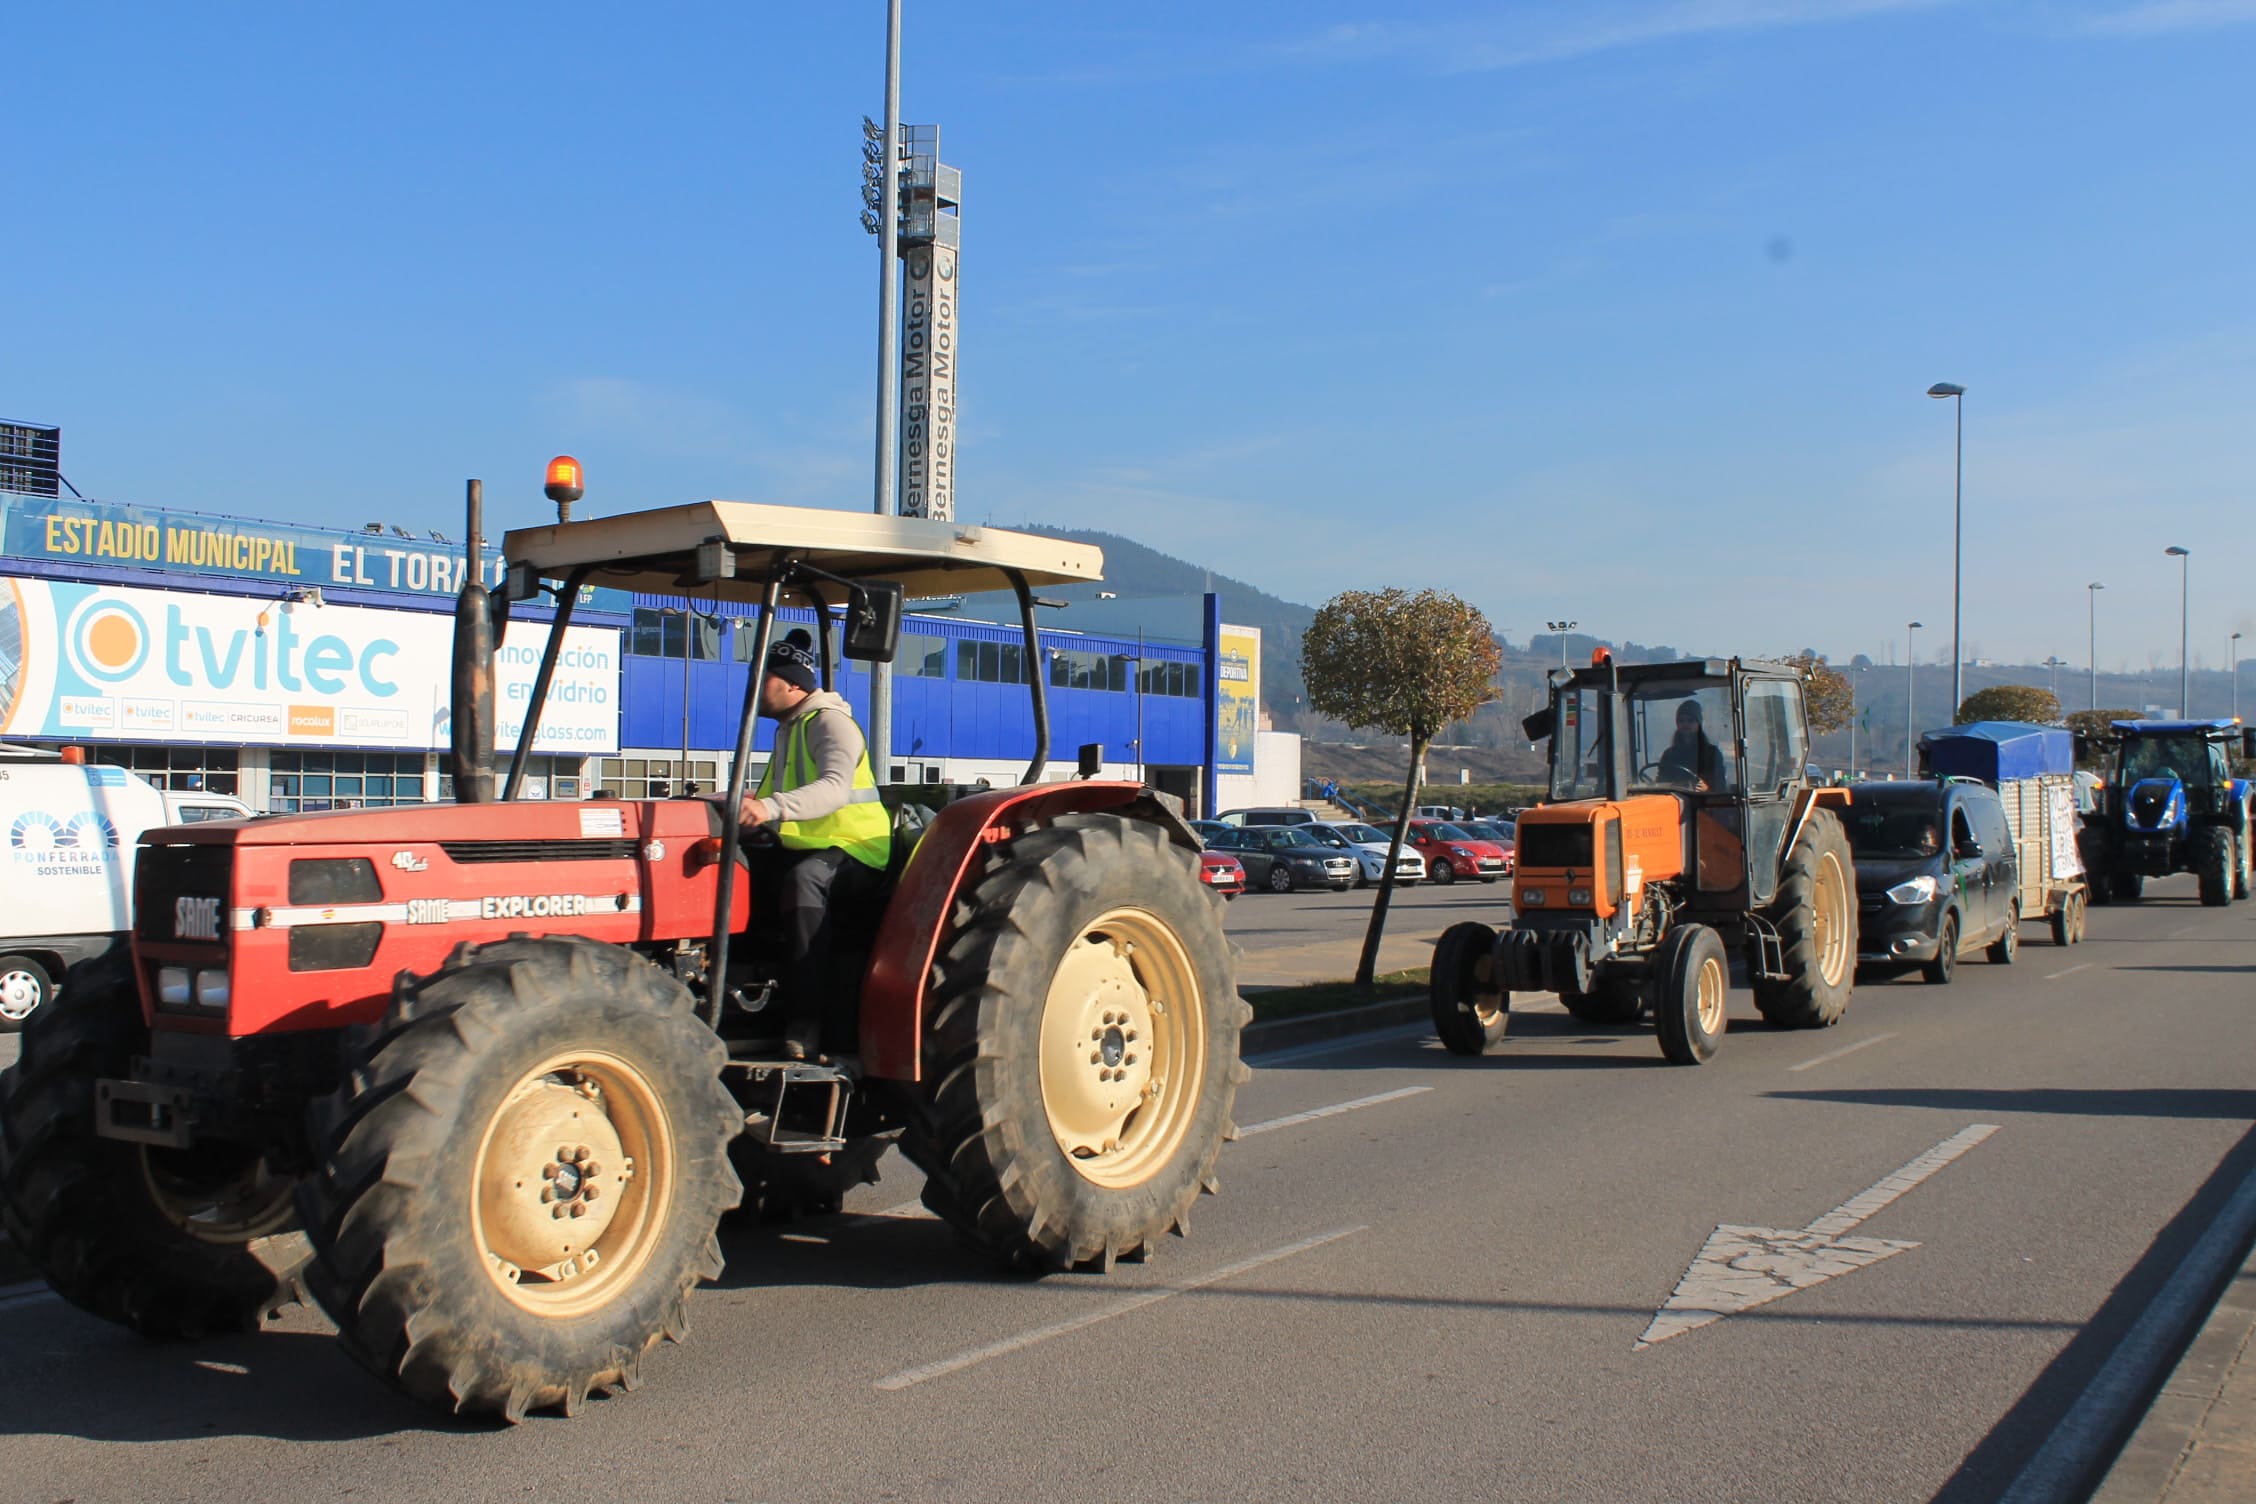 Los tractores toman las calles de Ponferrada